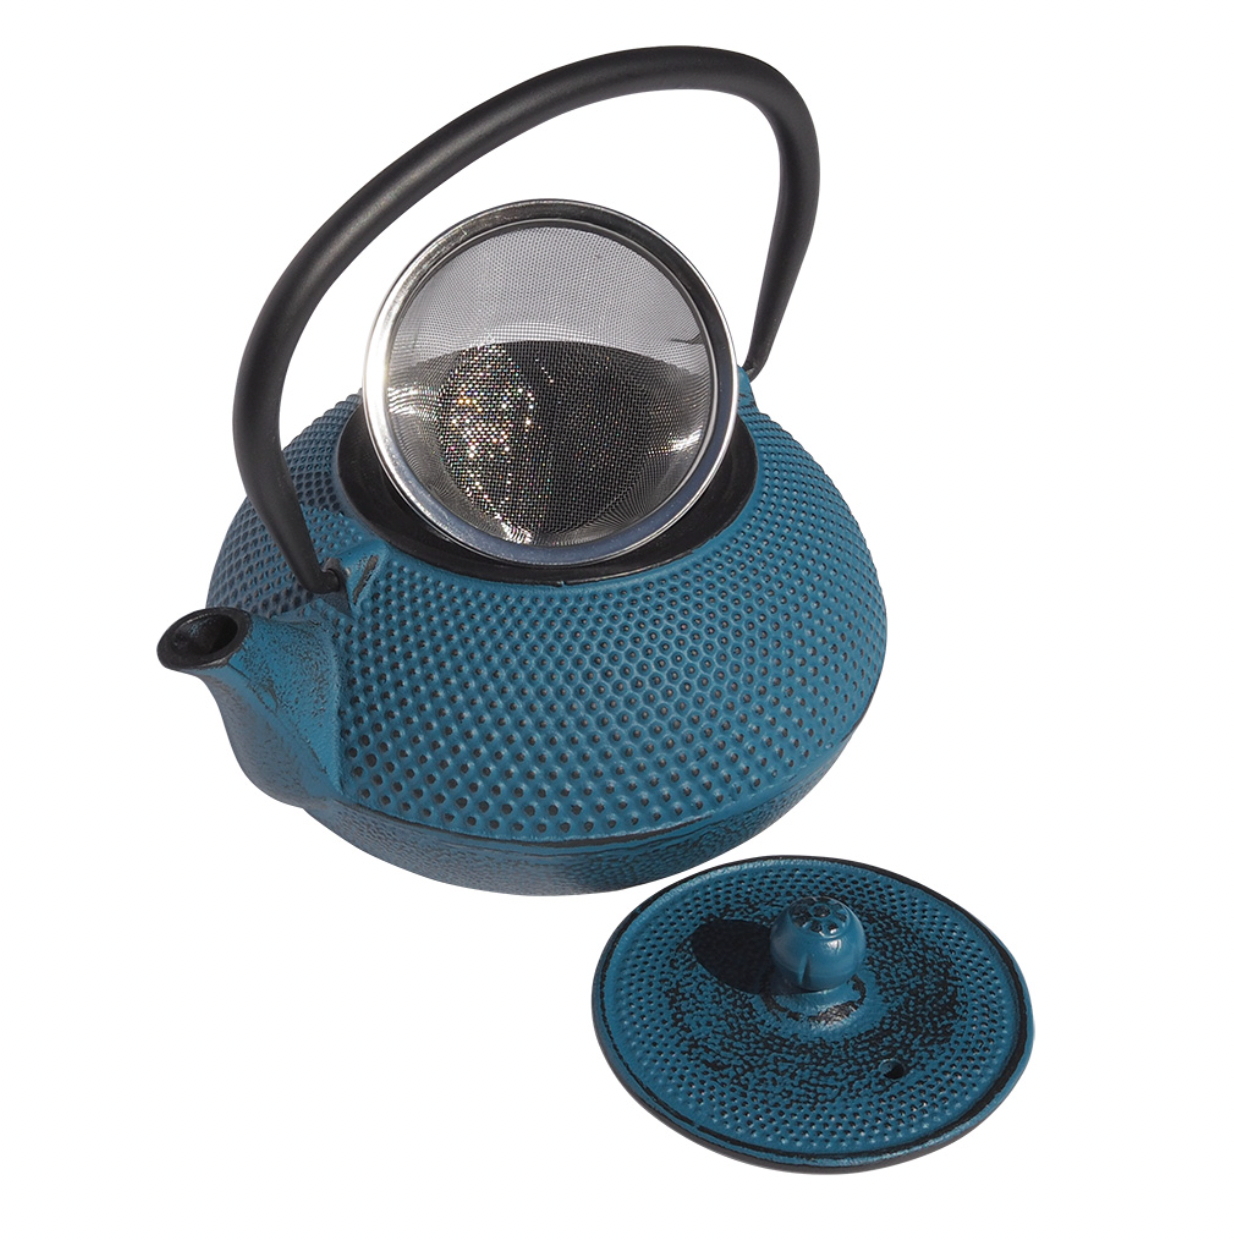 Tenshi Cast Iron Teapot – Teal - 600ml | MDTEA